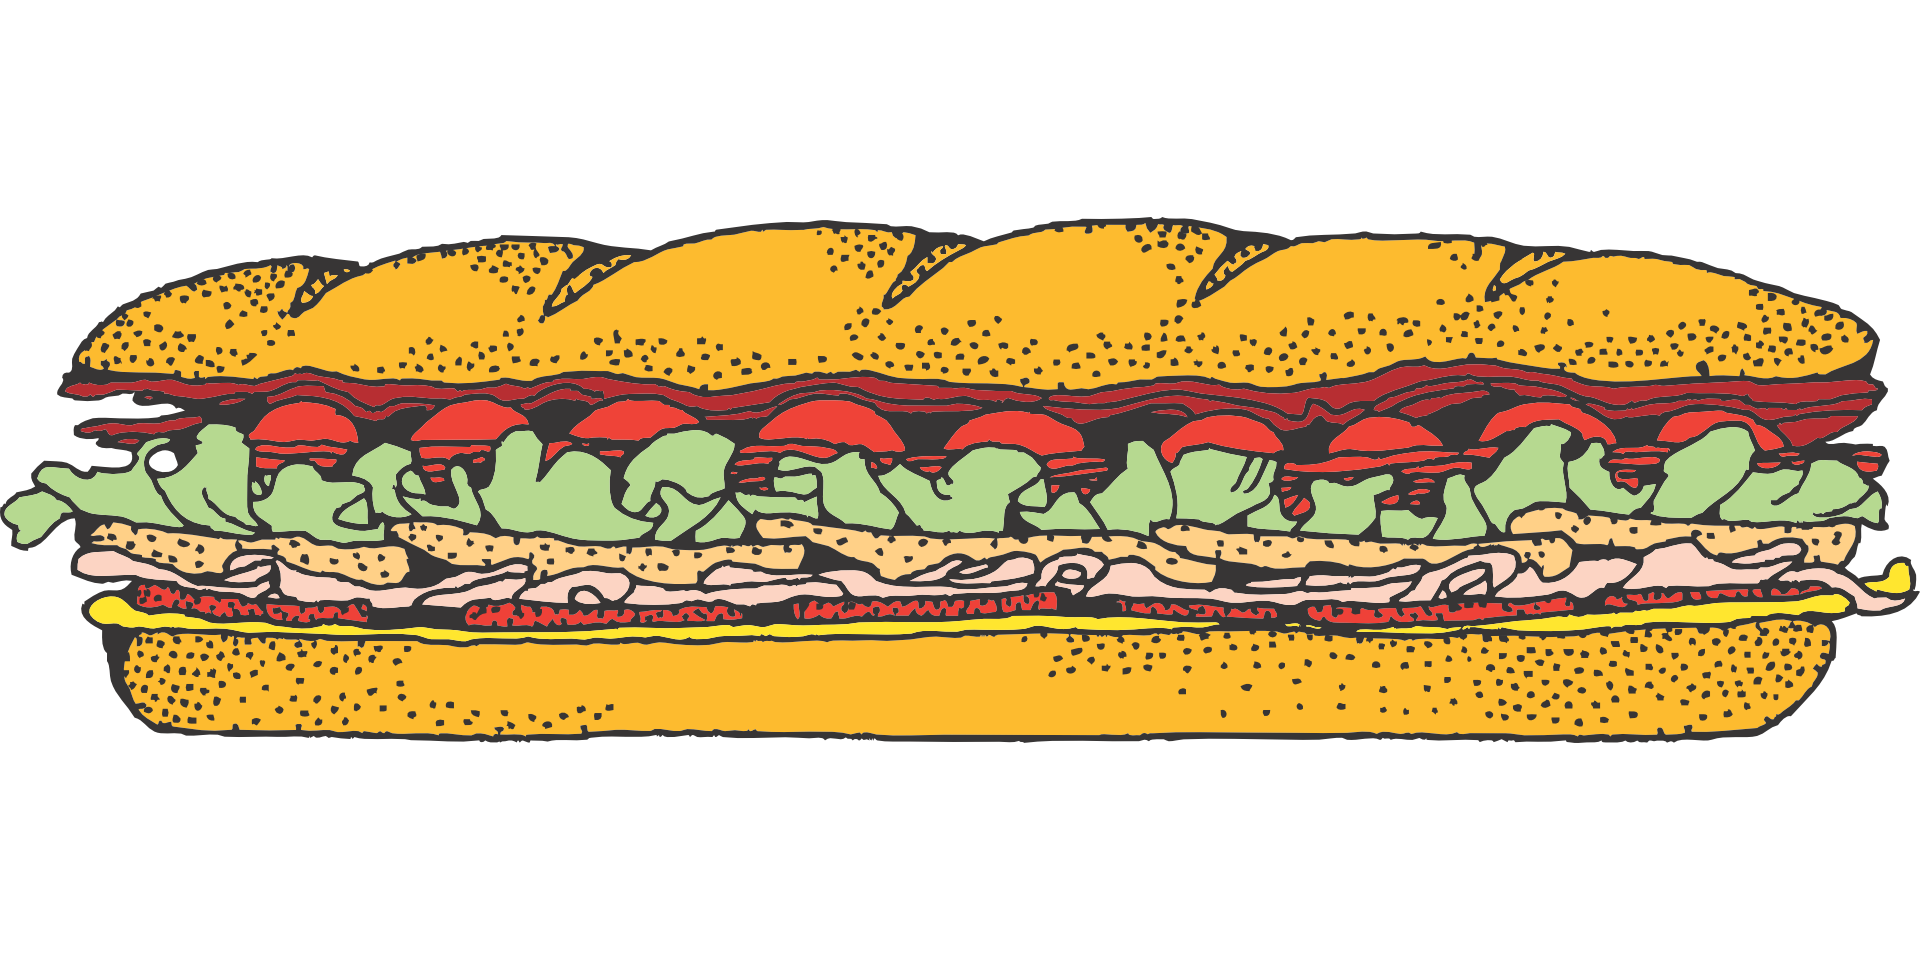 Submarine clipart orange. Sandwich panini delicatessen italian